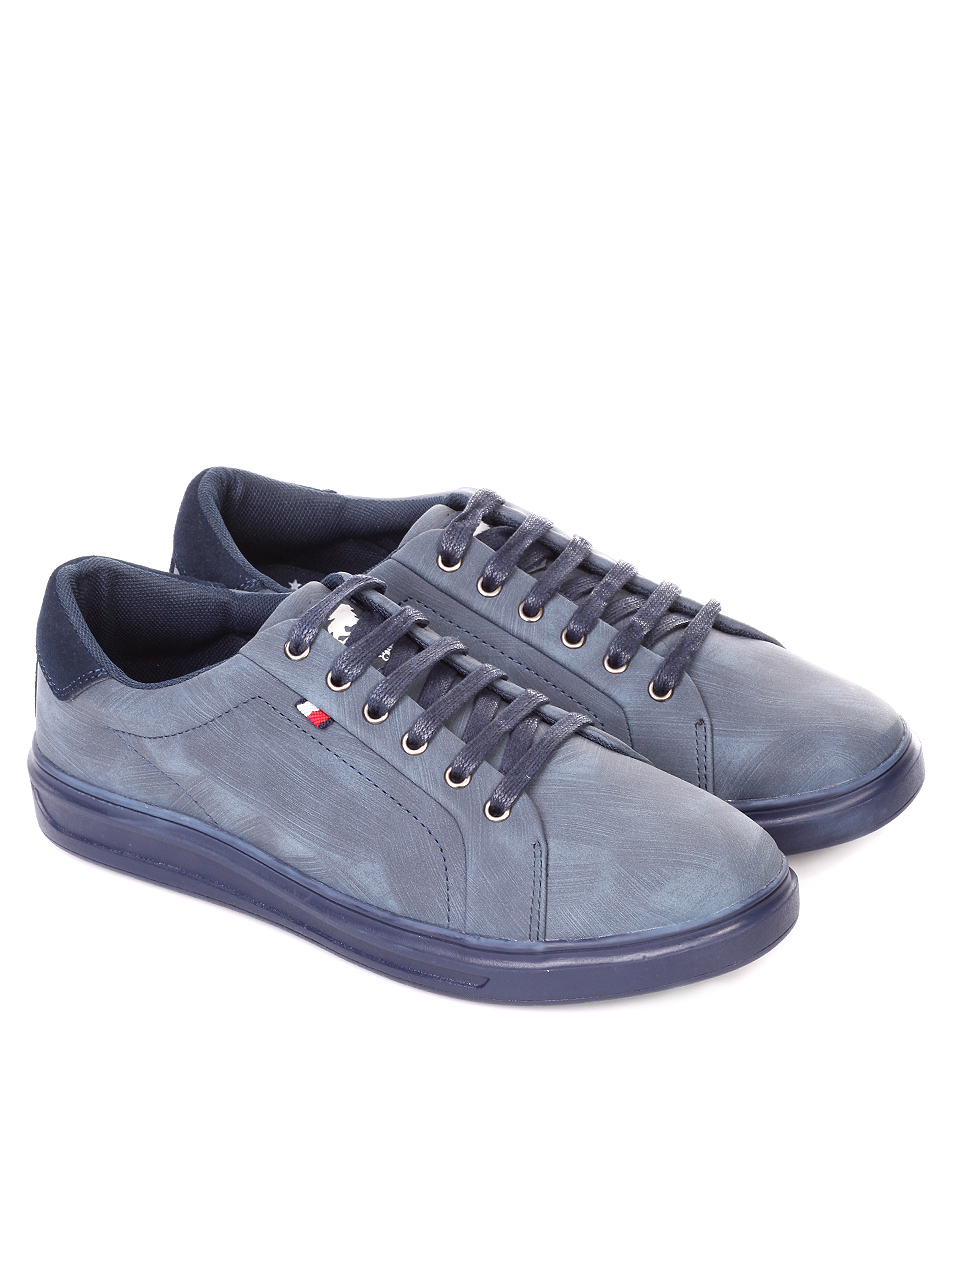 Ежедневни мъжки обувки в синьо 7N-18741 navy